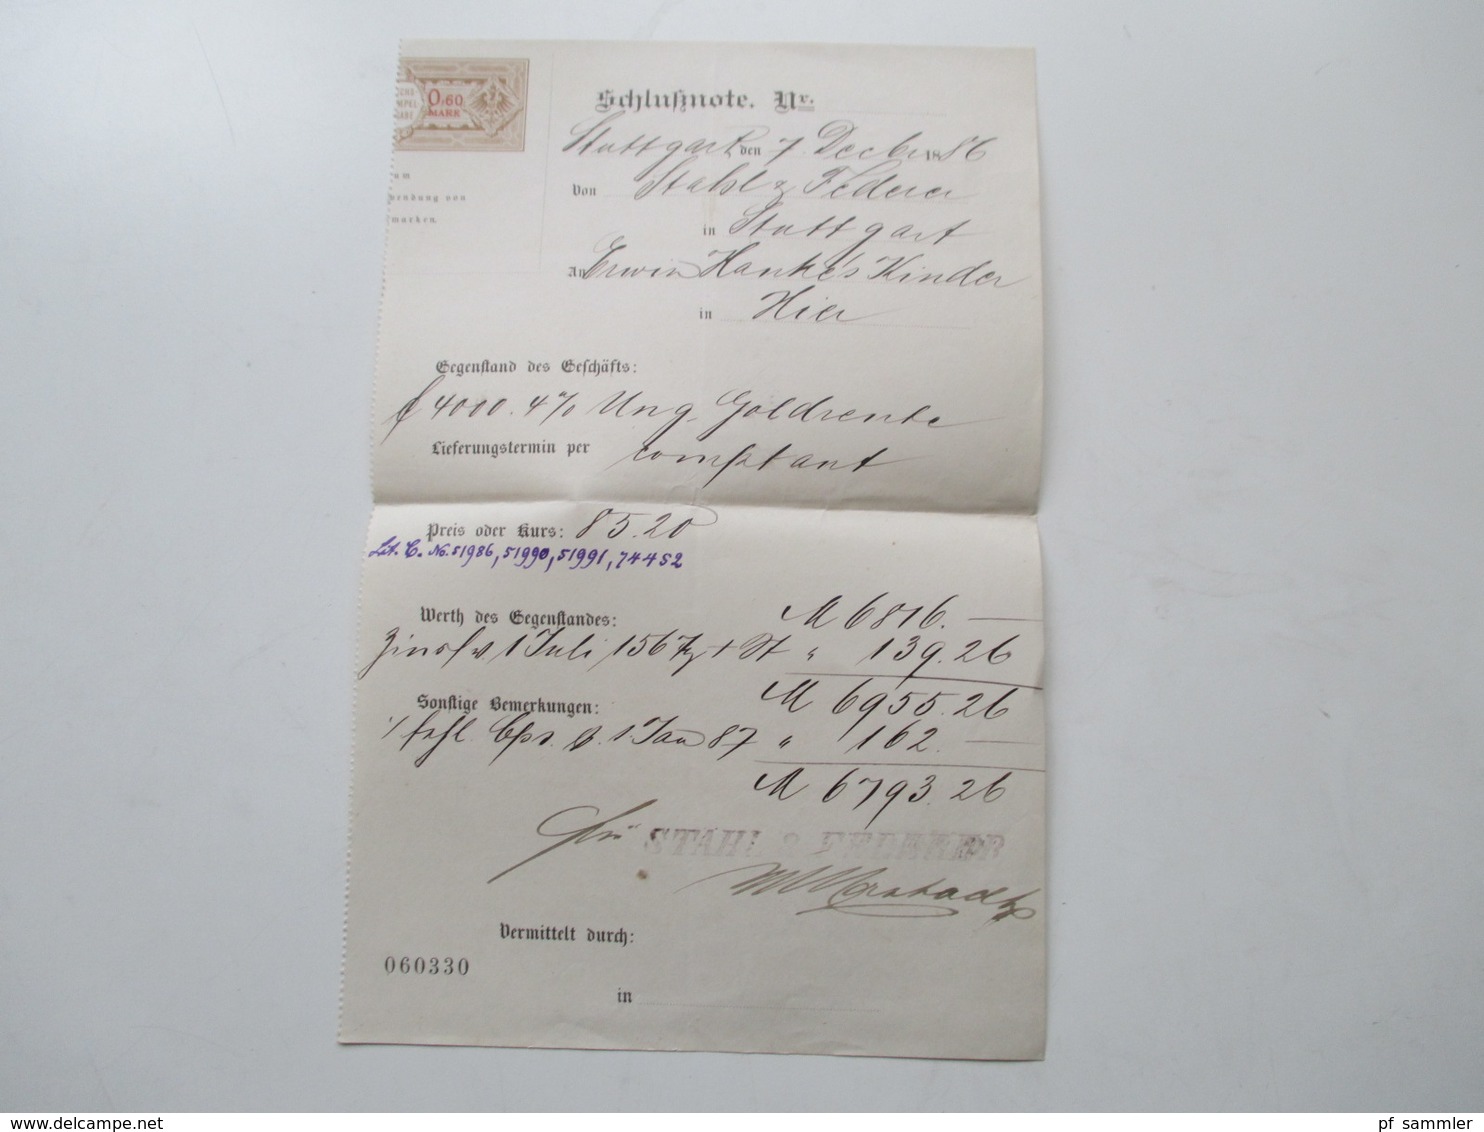 1882 - 93 Württemberg Stuttgart - New York Bank Belege / Nota / Stempelmarken + Post Einlieferungsscheine nach New York